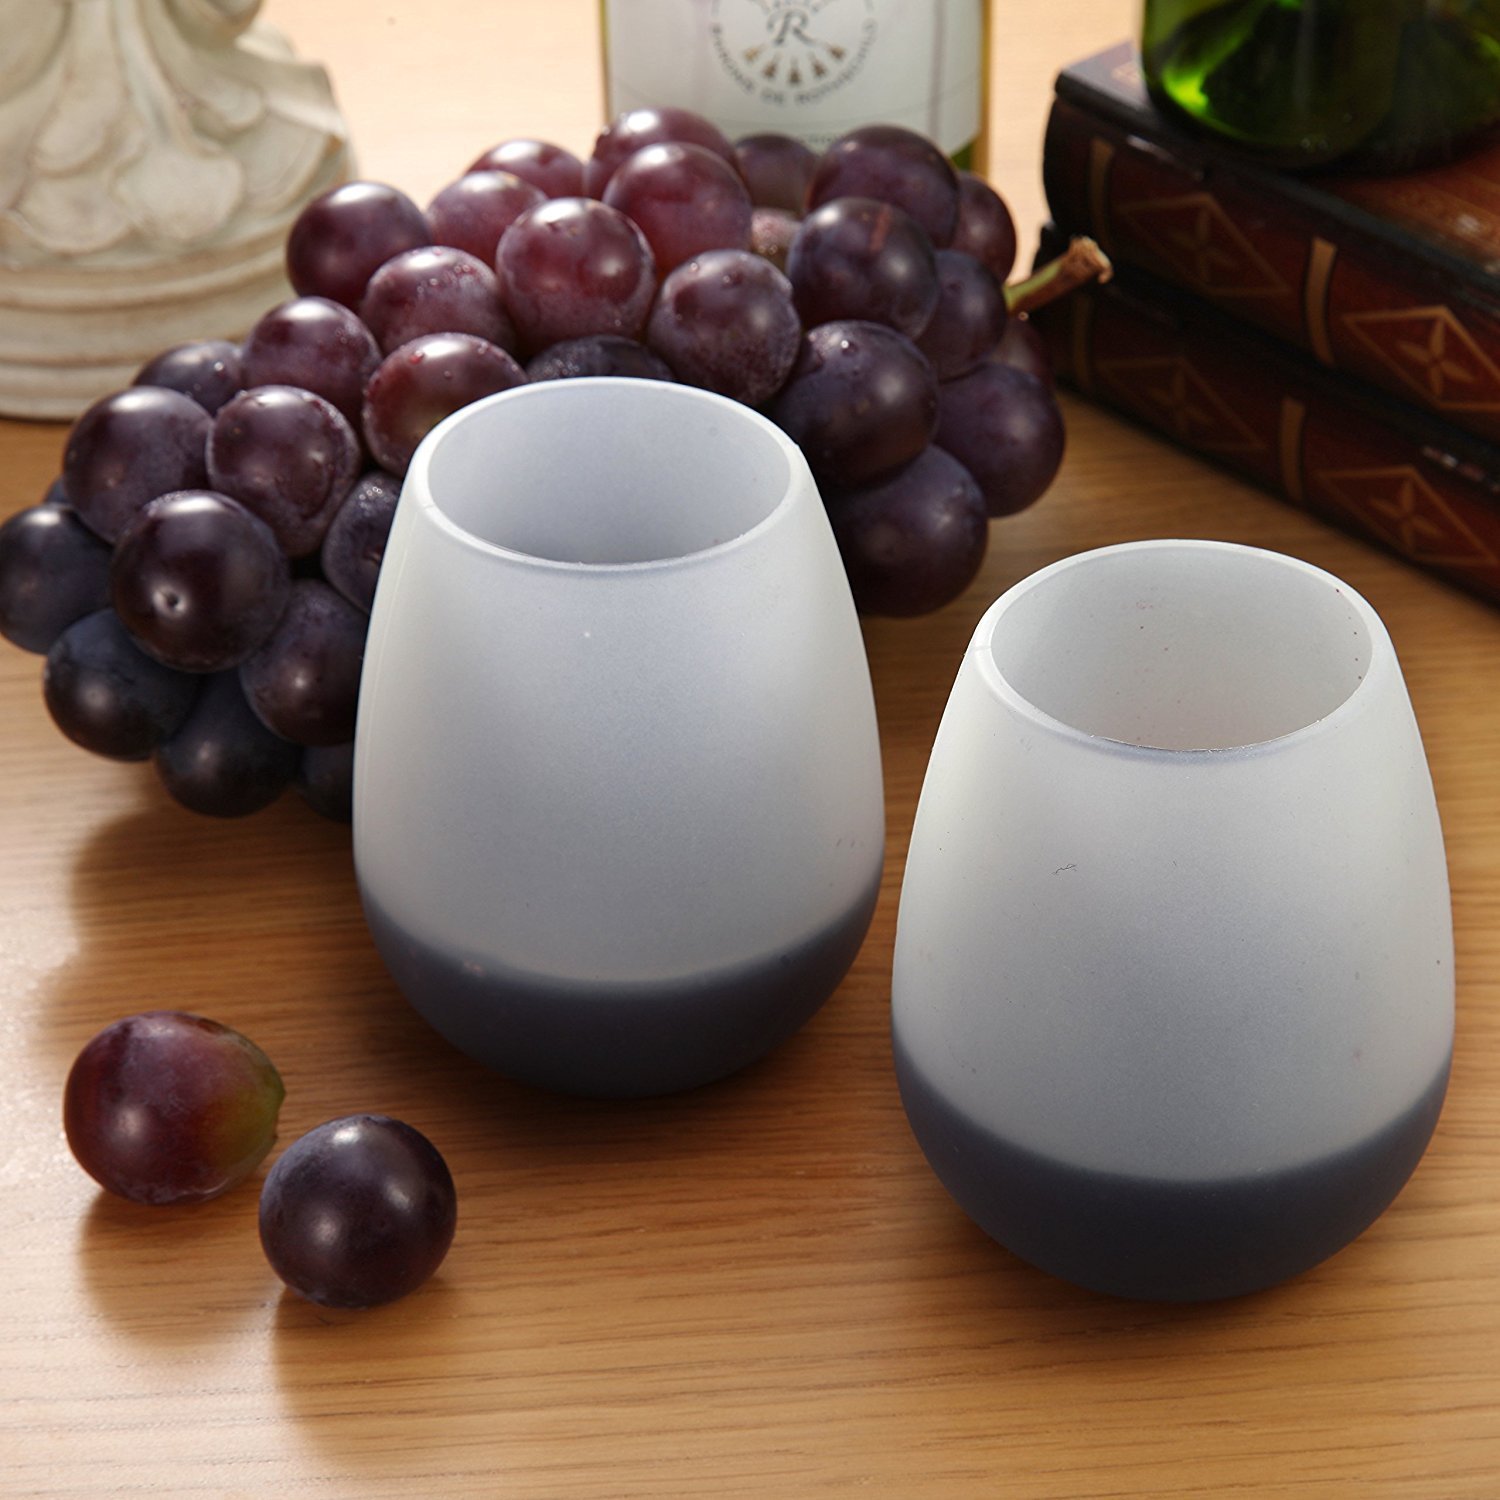 100% BPA Free Silicone Wine Glasses Dishwasher Safe Silicone Wine Glasses